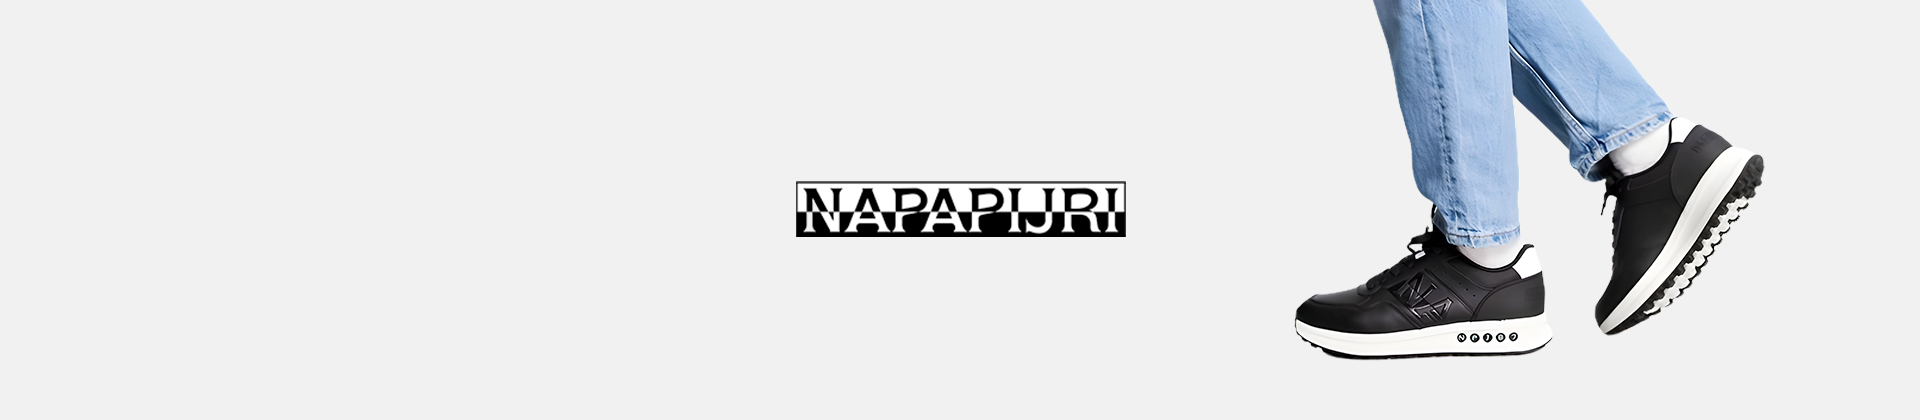 Napapijri shoes women's online collection